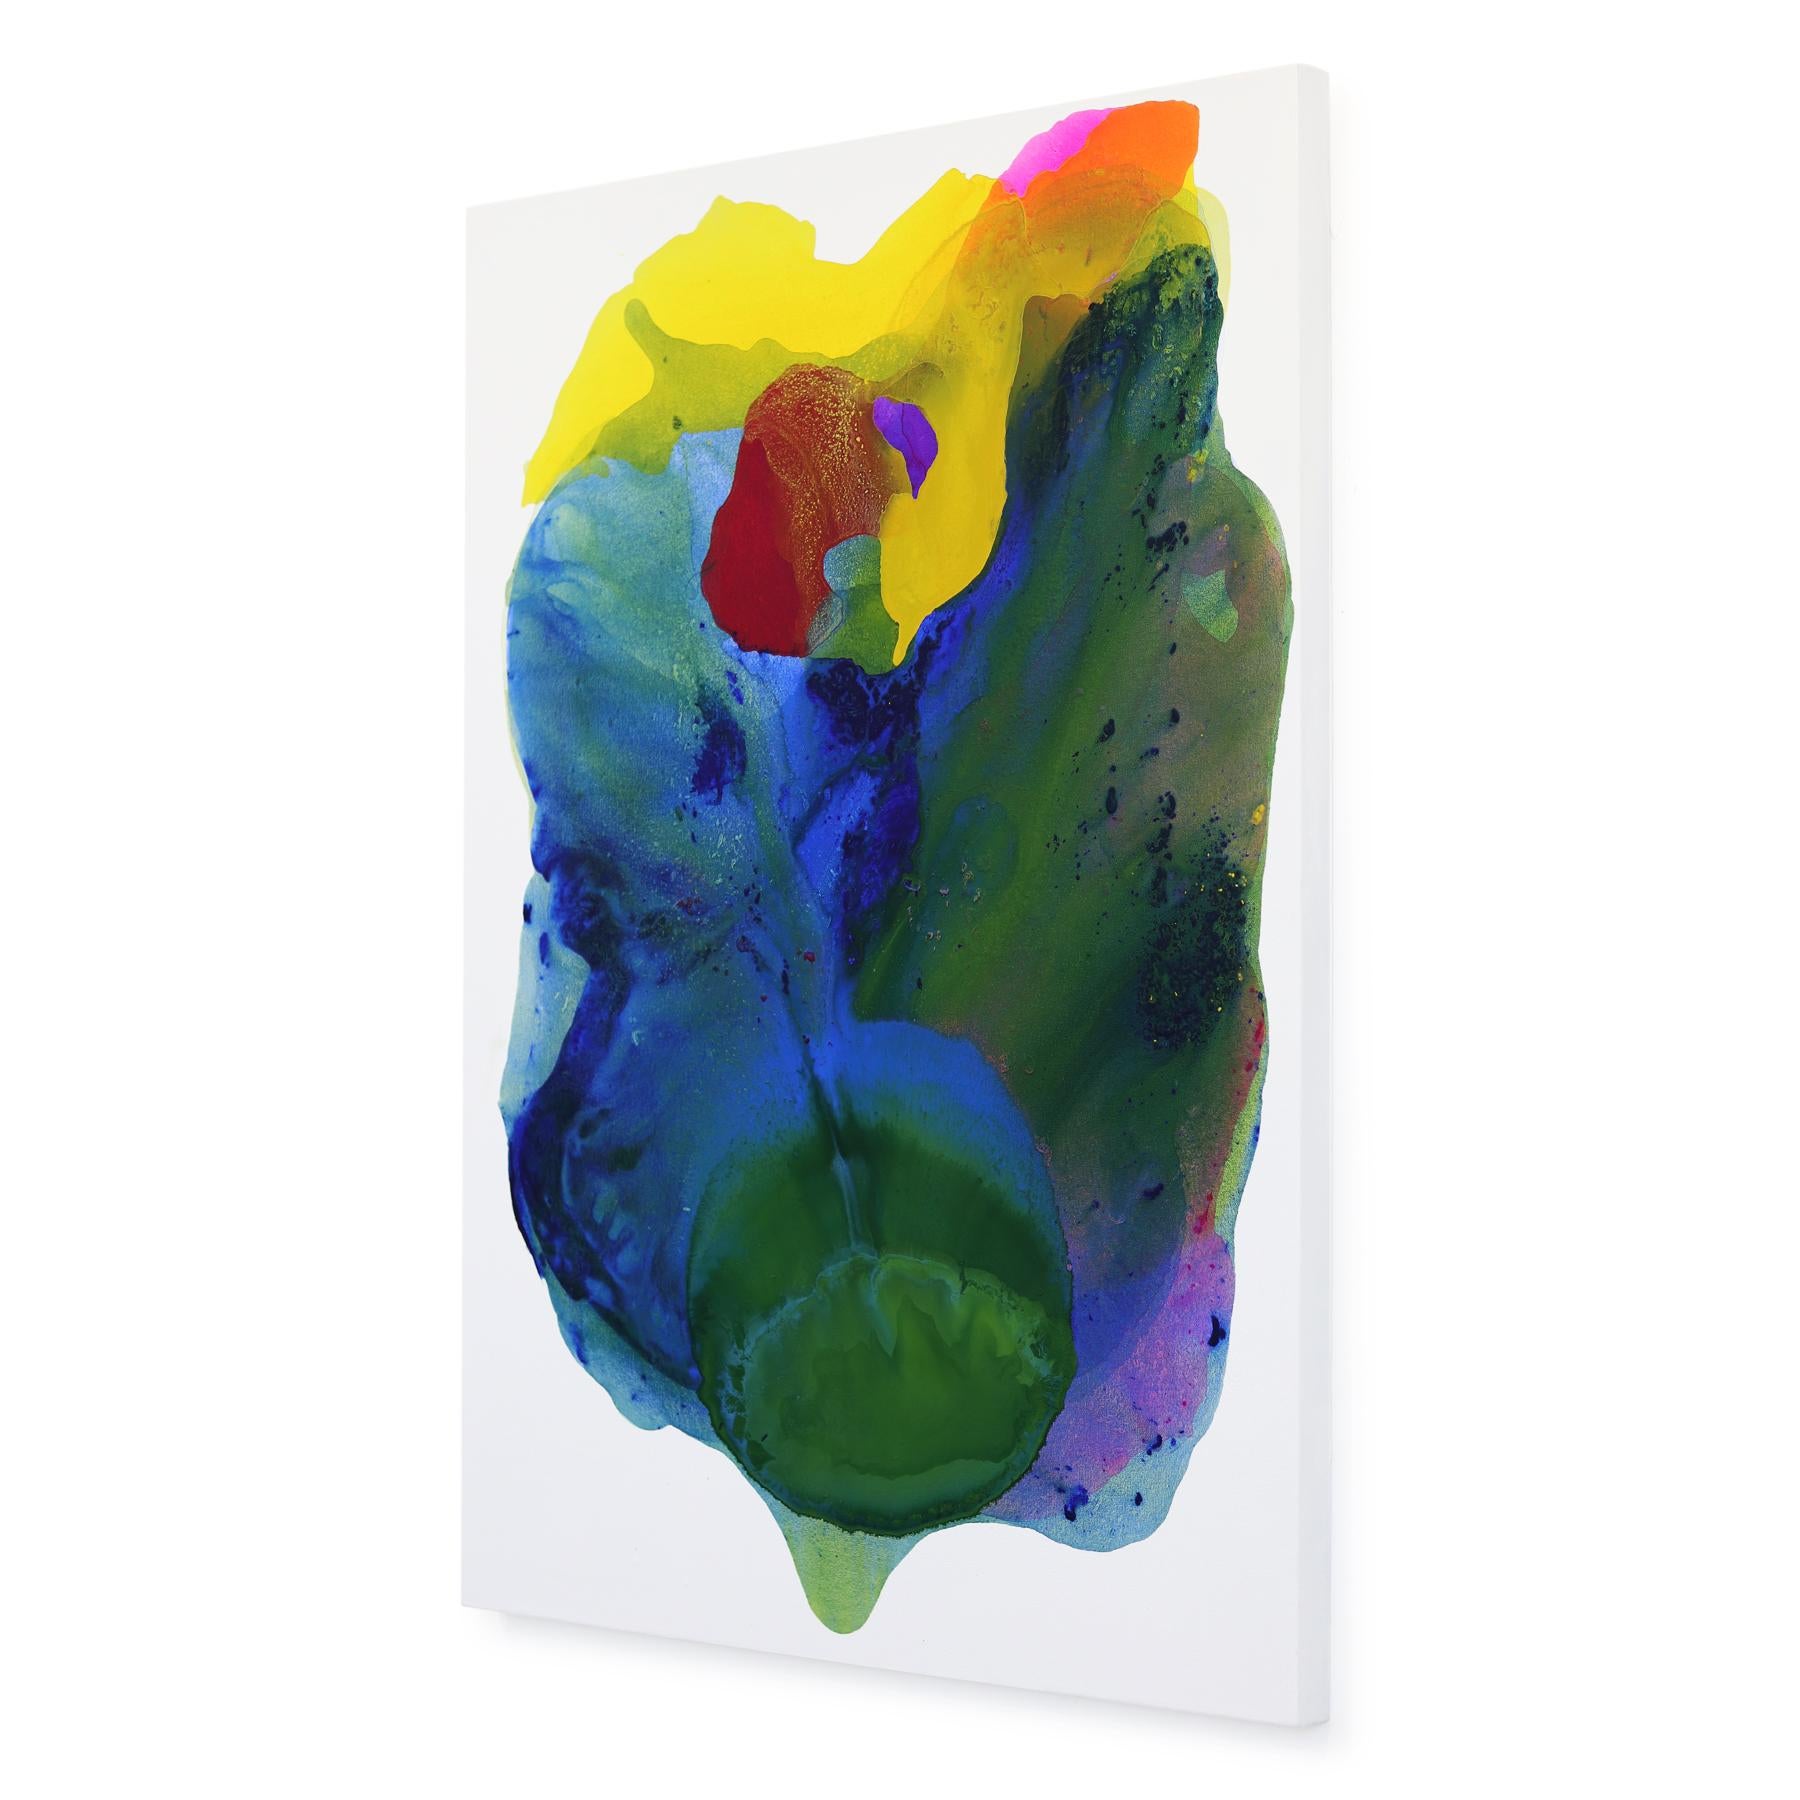 Les peintures acryliques et mixtes de Clara Berta mélangent les textures et les couleurs pour créer de l'harmonie, du mystère et de la profondeur sur la surface peinte. Ses peintures transforment les espaces en environnements zen où l'on peut